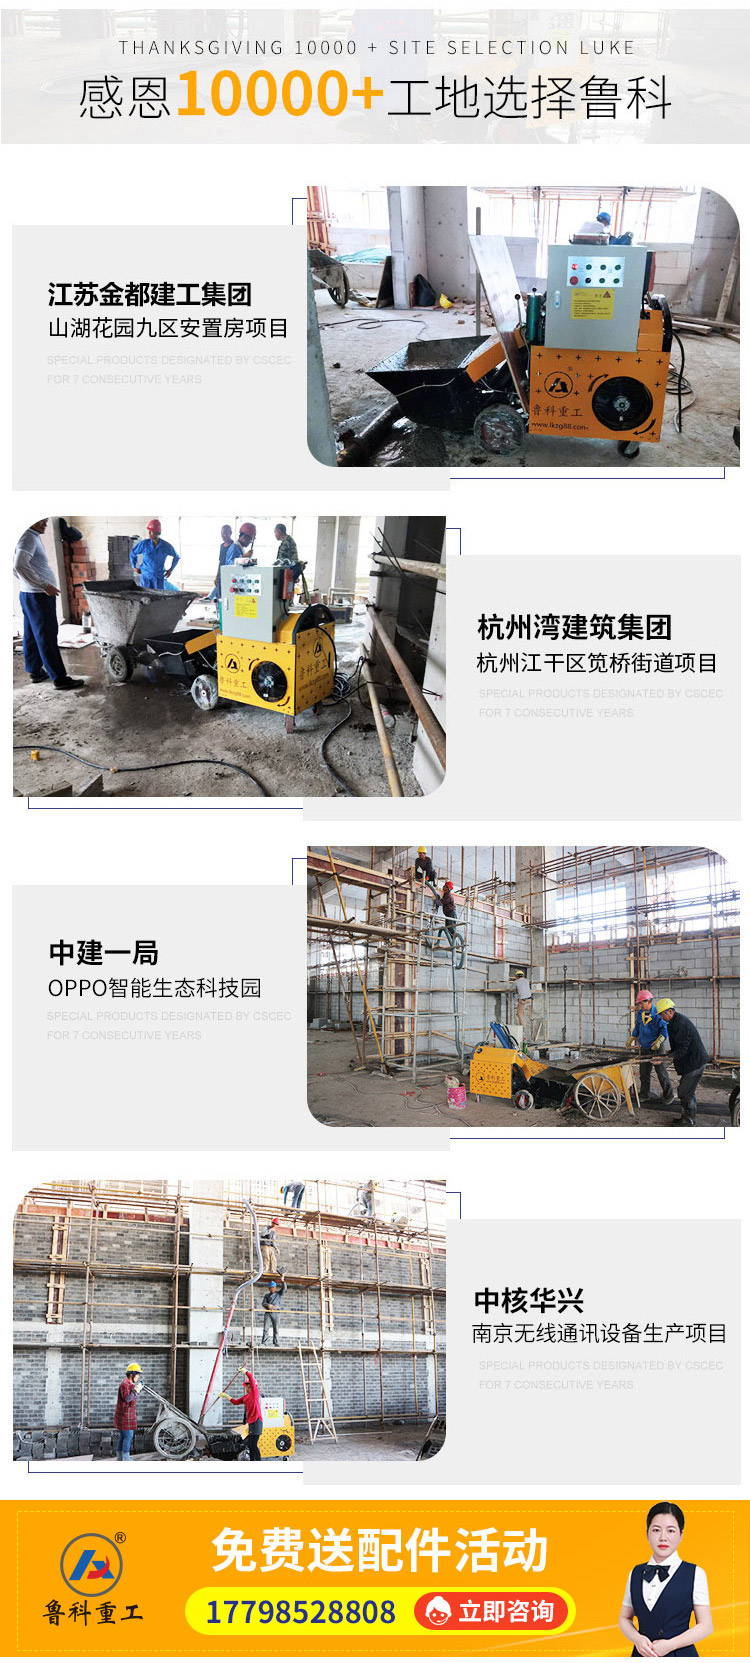 苏州小科机械厂制造微型泵车.jpg